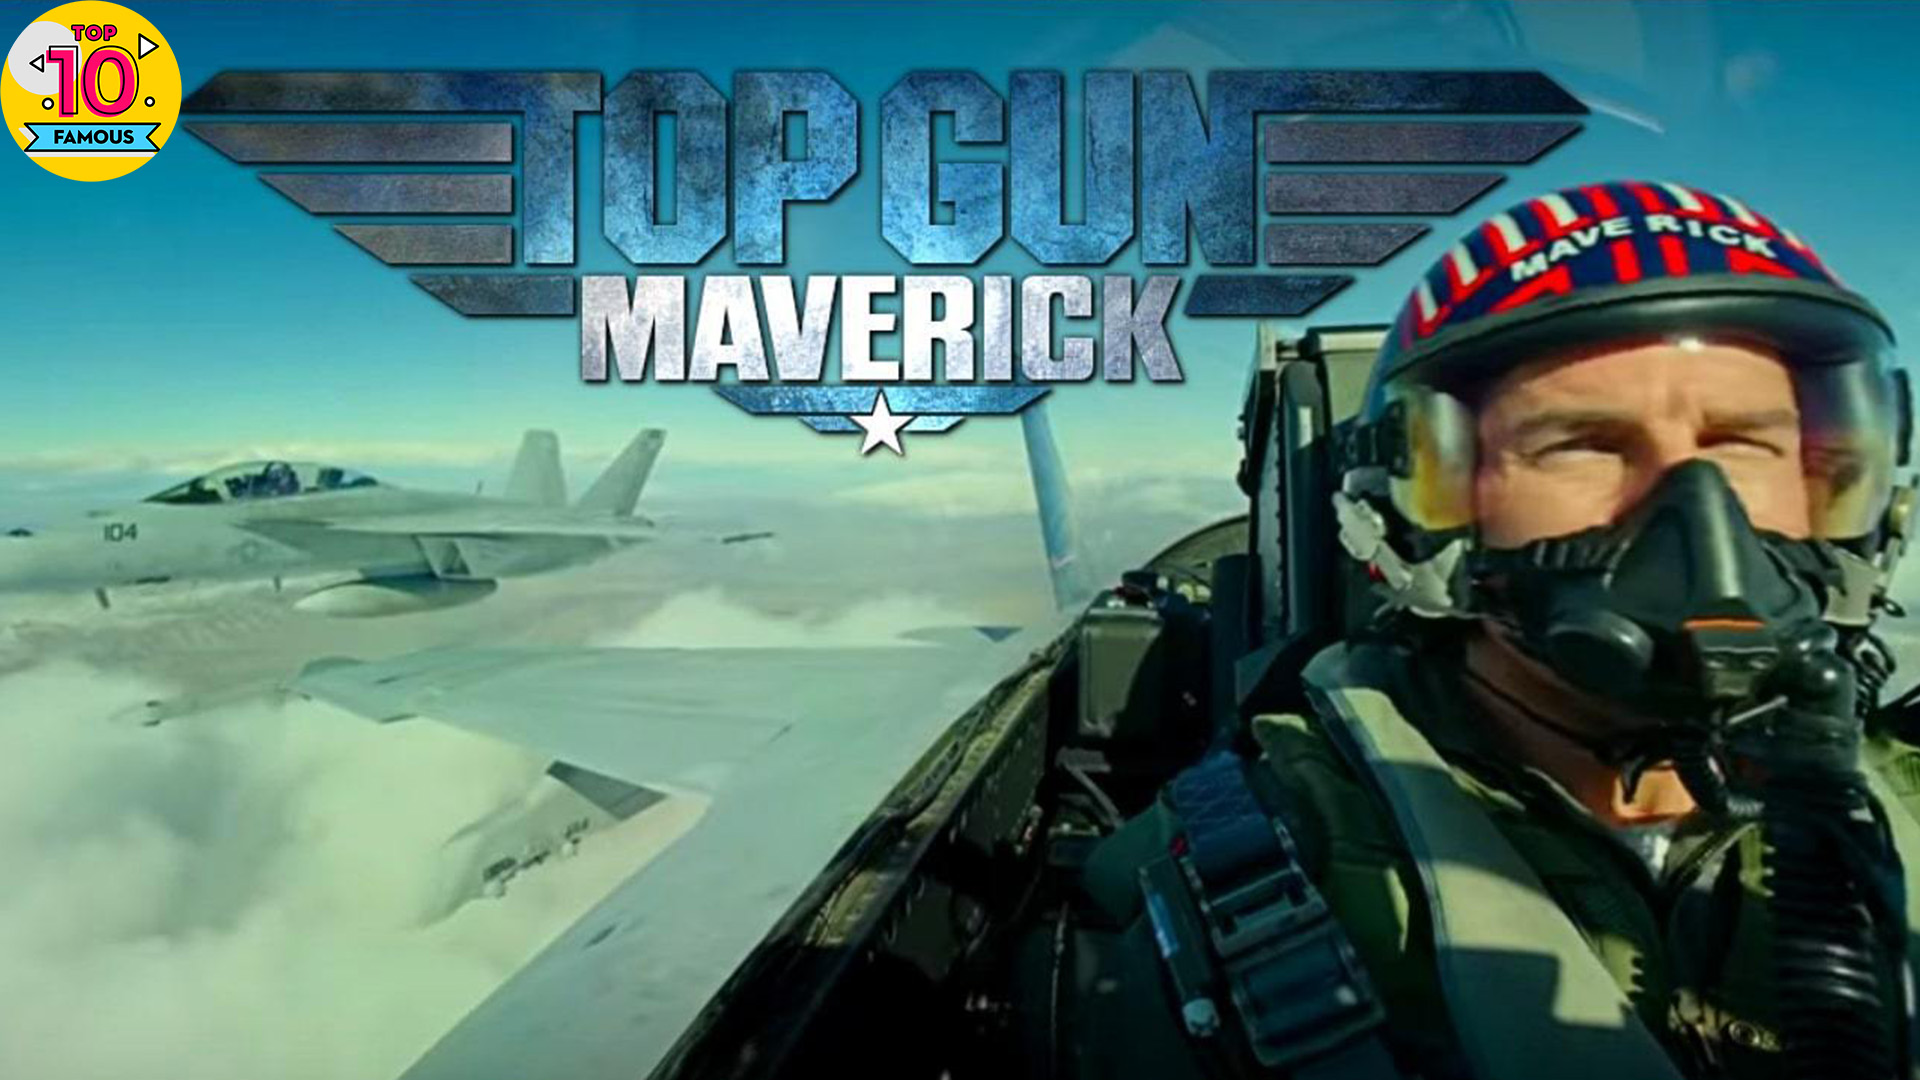 Мэверик 2022 трейлер на русском. Top Gun Maverick 2021. Top Gun 2 Maverick. Топ Ган Маверик 2020. Top Gun Maverick Tom Cruise 2020.